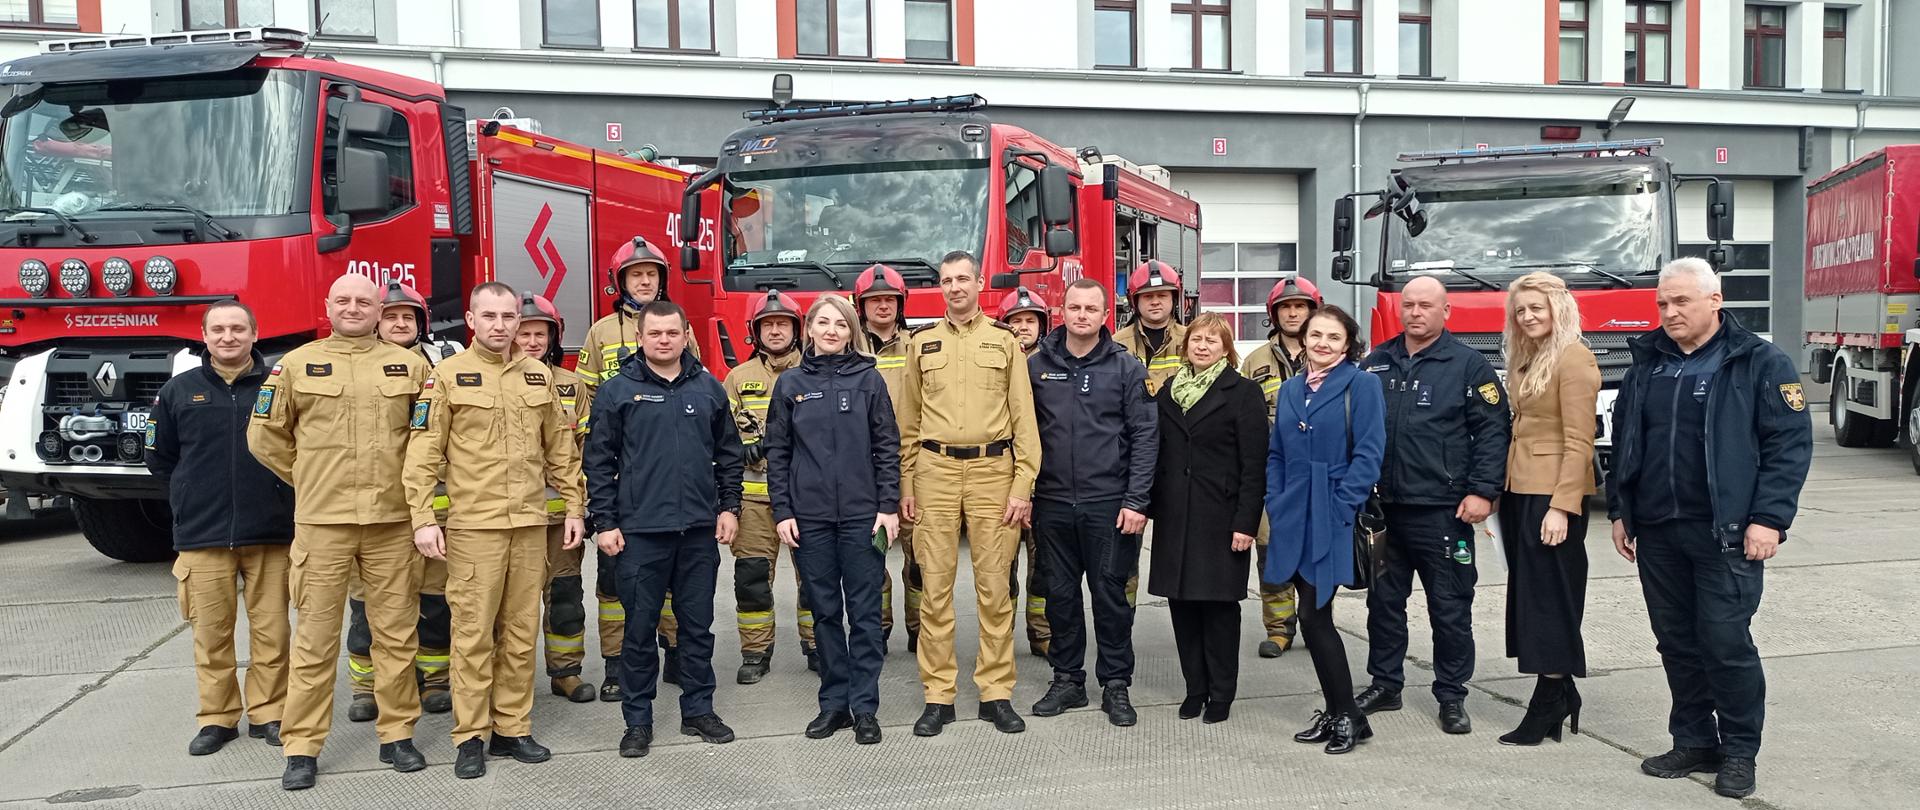 Wizyta delegacji ukraińskich strażaków z obwodu iwanofrankiwskiego na terenie powiatu brzeskiego - zdjęcie przedstawia delegację ukraińskich strażaków oraz funkcjonariuszy KP PSP Brzeg